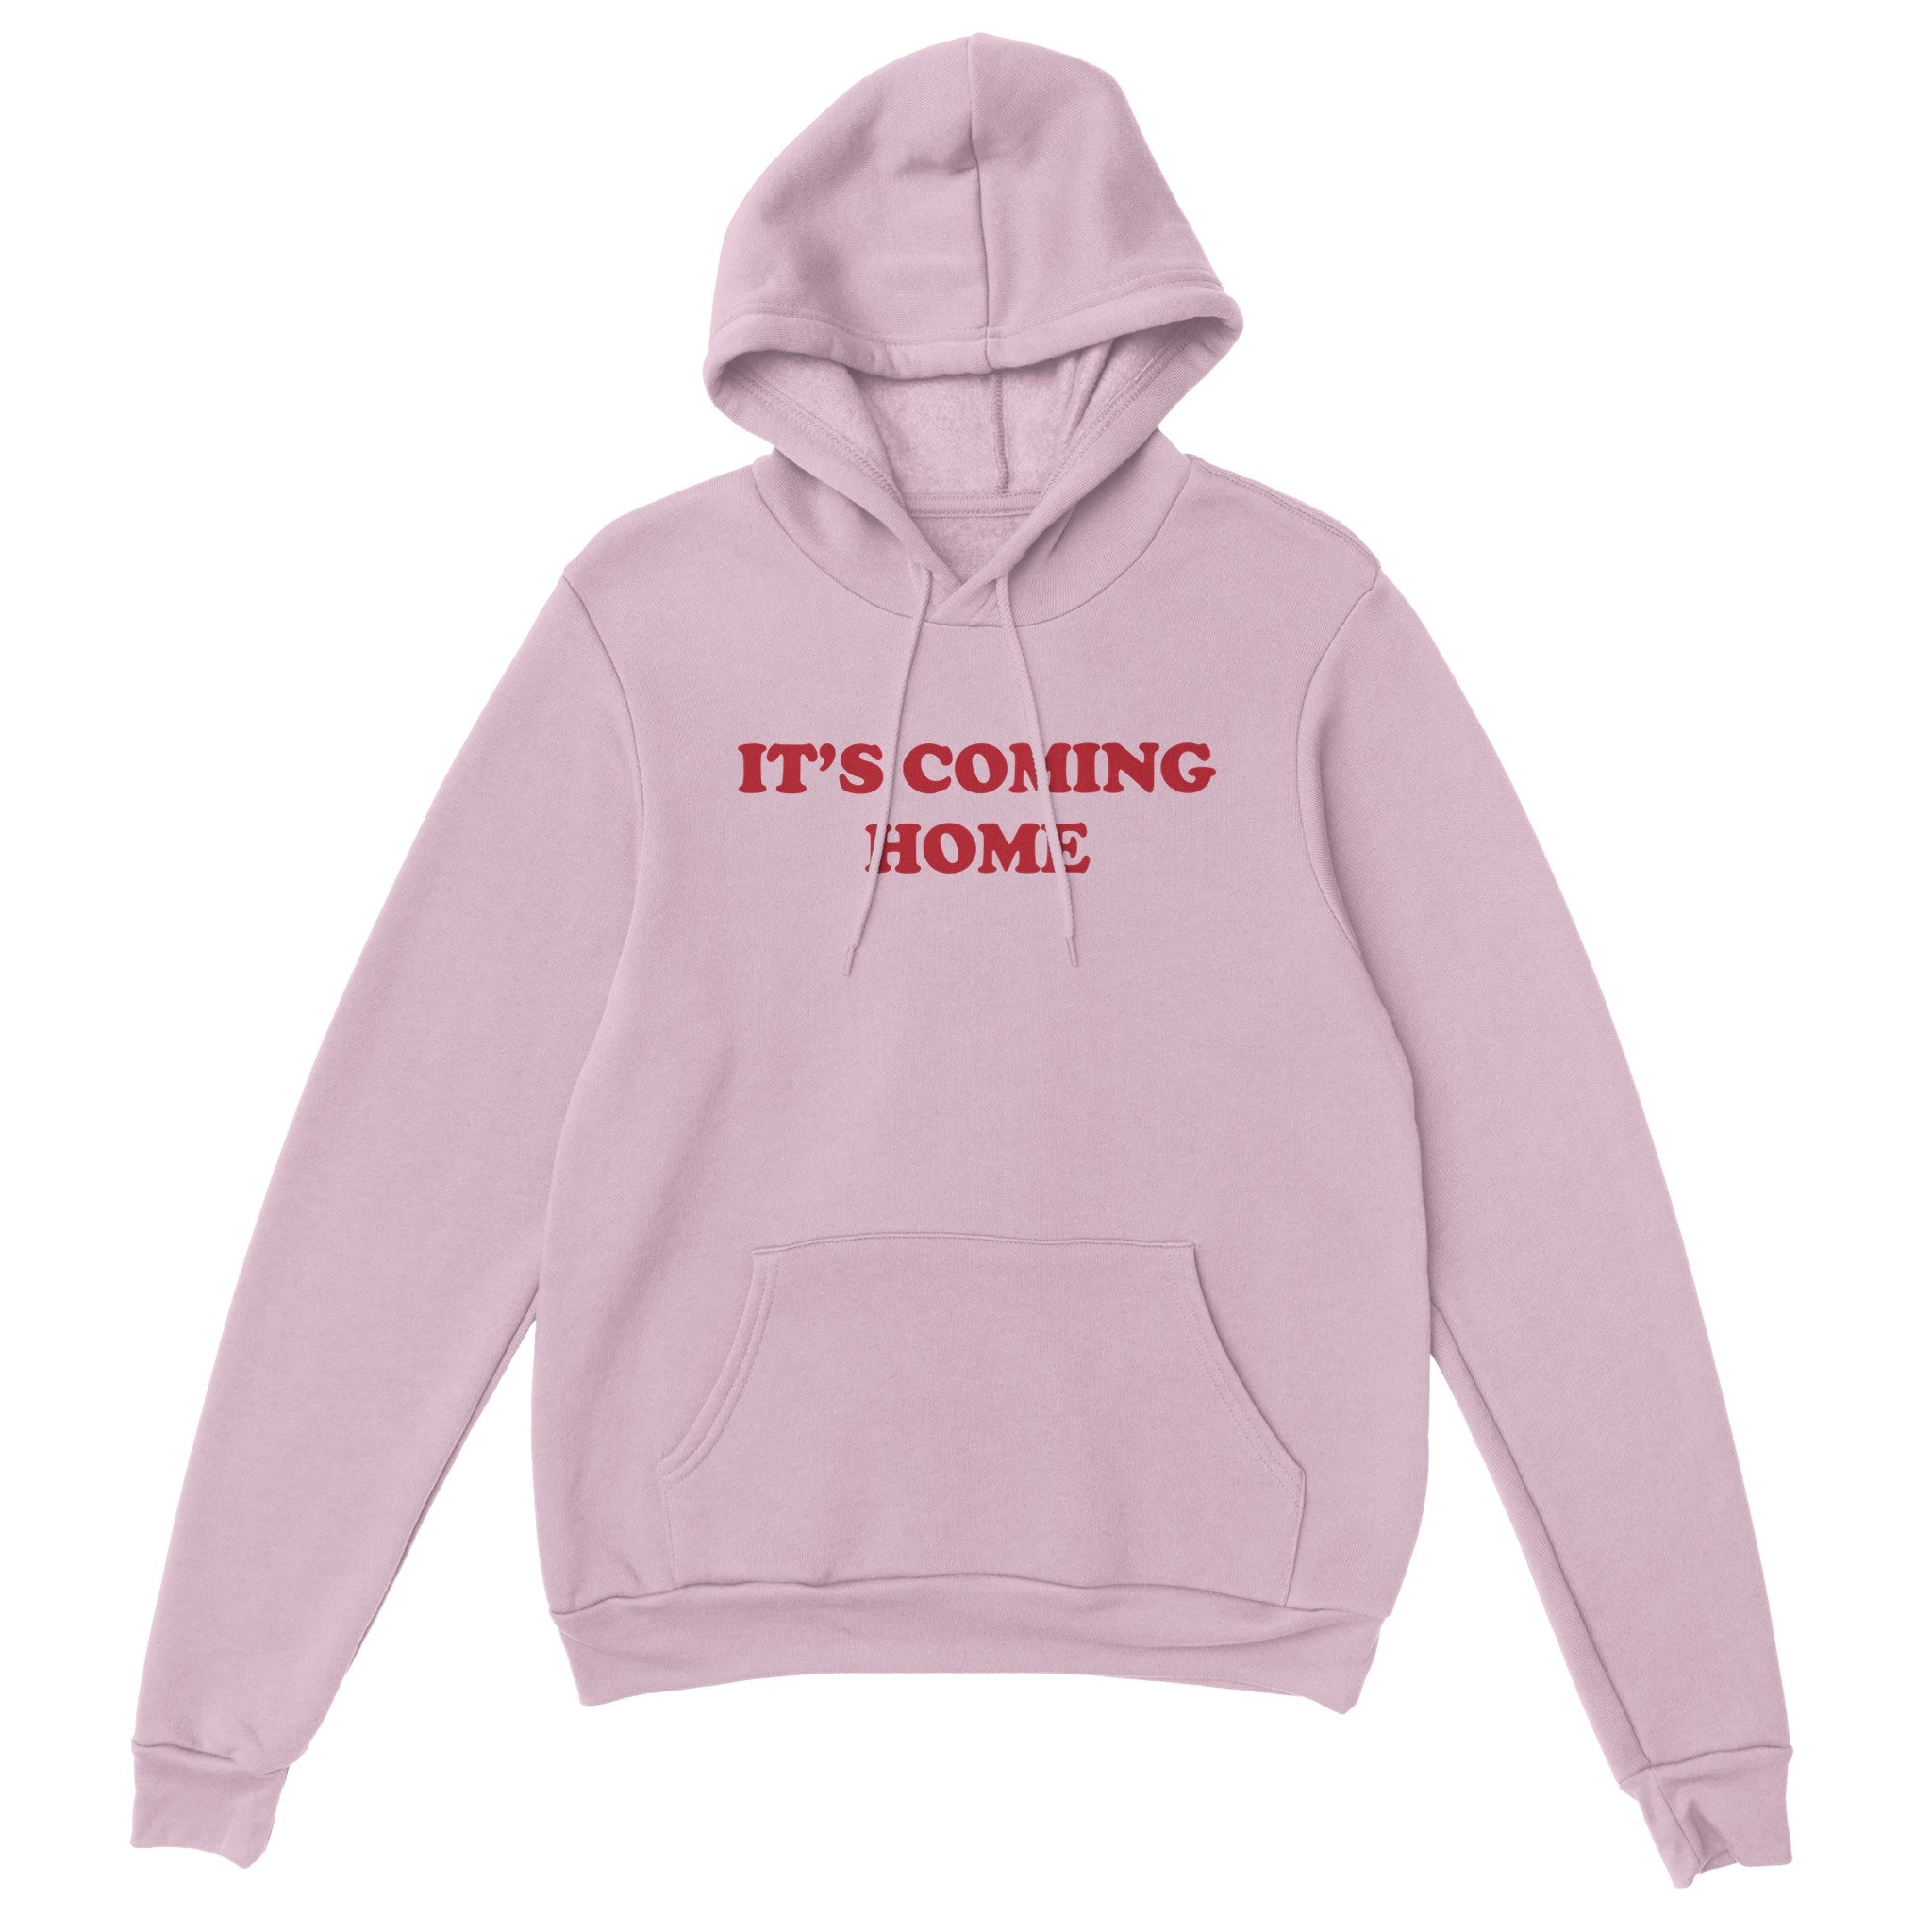 'It's Coming Home' hoodie - In Print We Trust